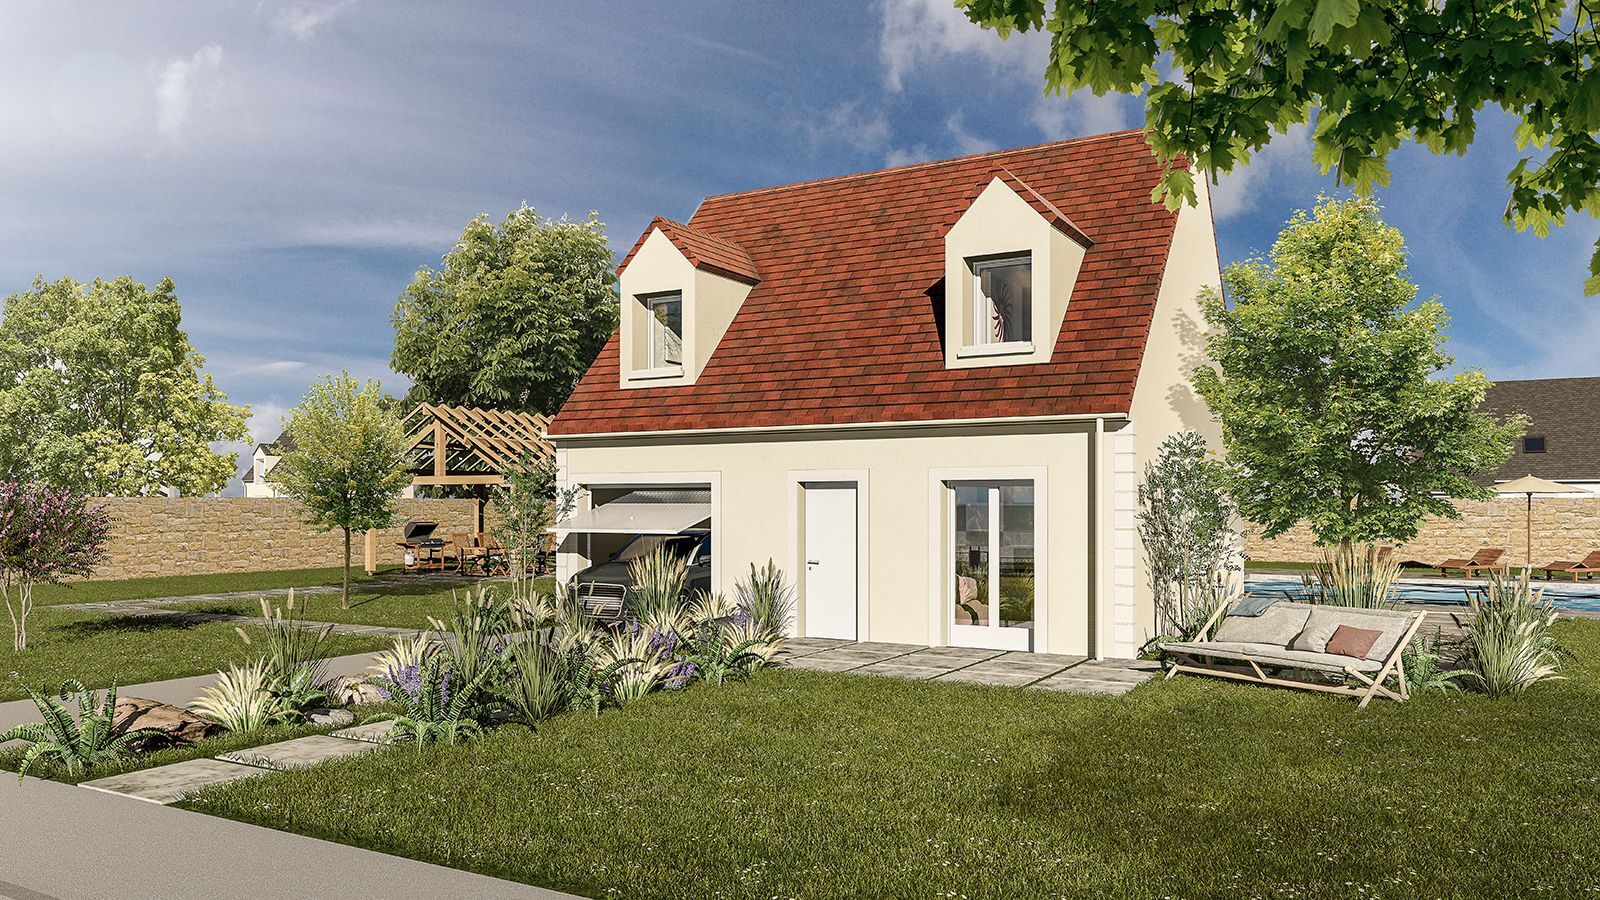 Vente Maison neuve 81 m² à La Croix-en-Brie 244 594 €